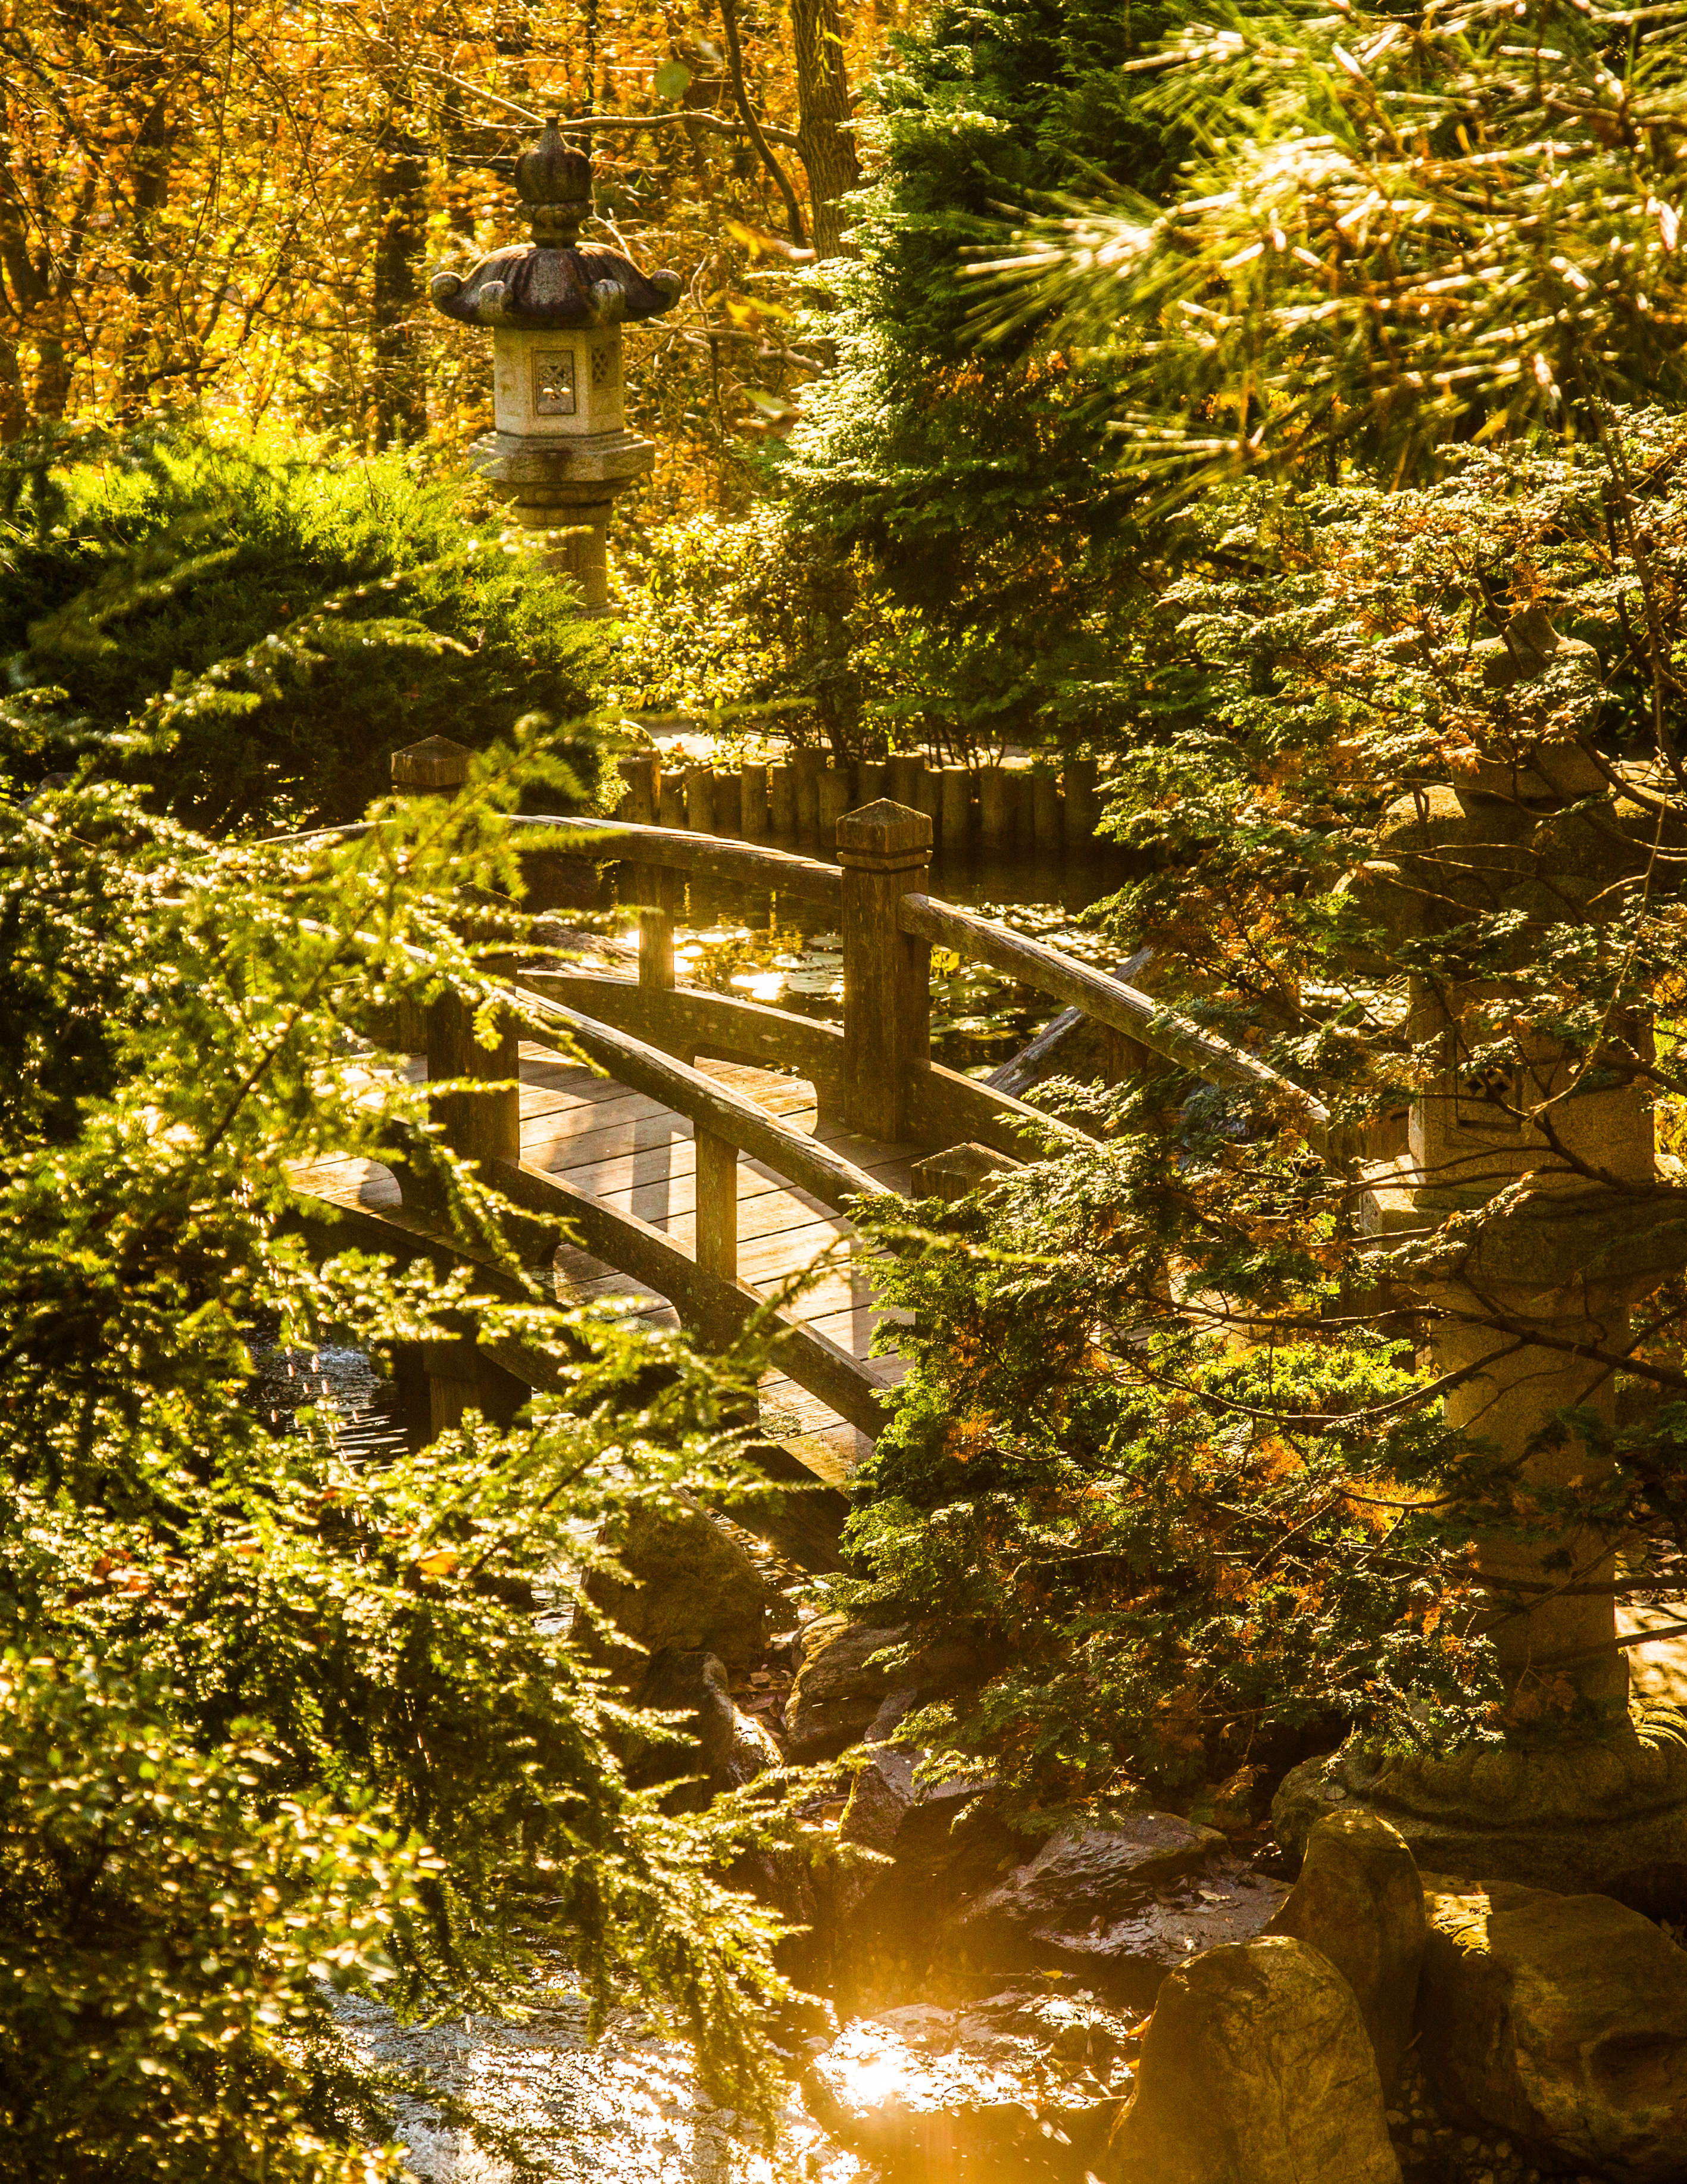 Bridge in the Japanese-style garden